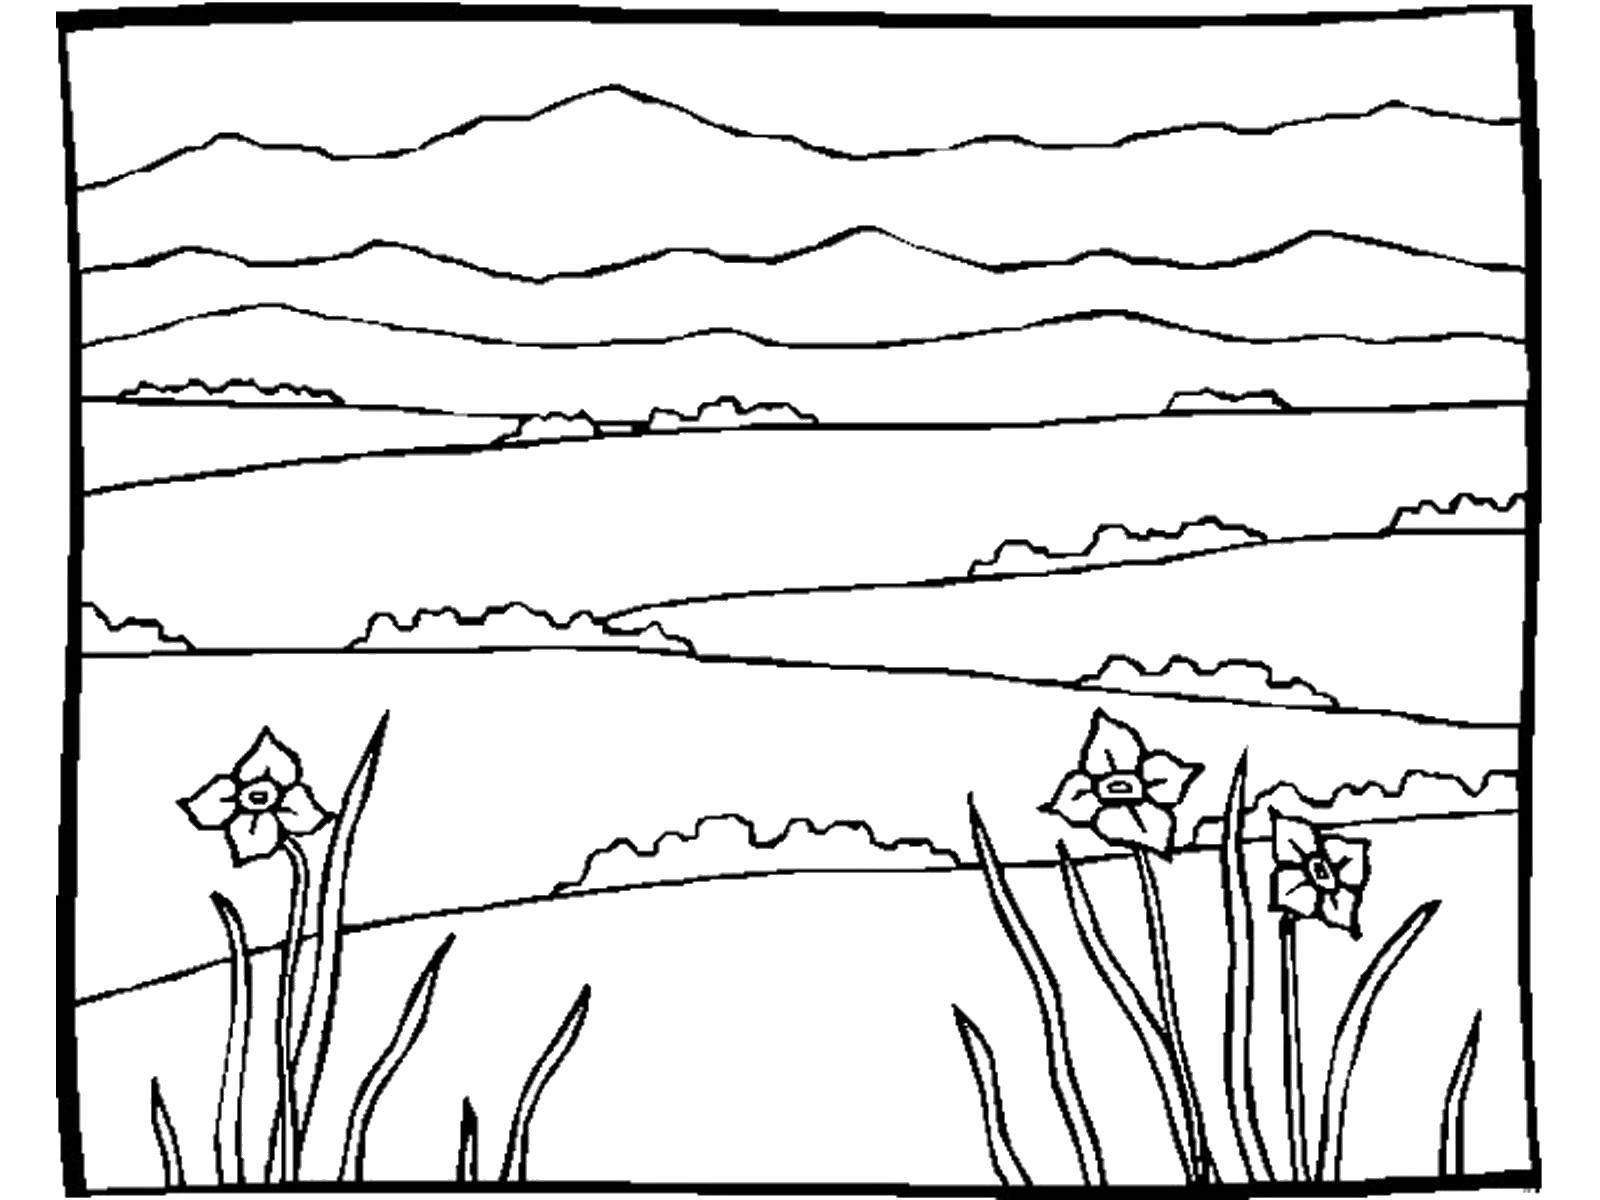  Горные поляны цветов Расцветшие нарциссы в горной поляне.